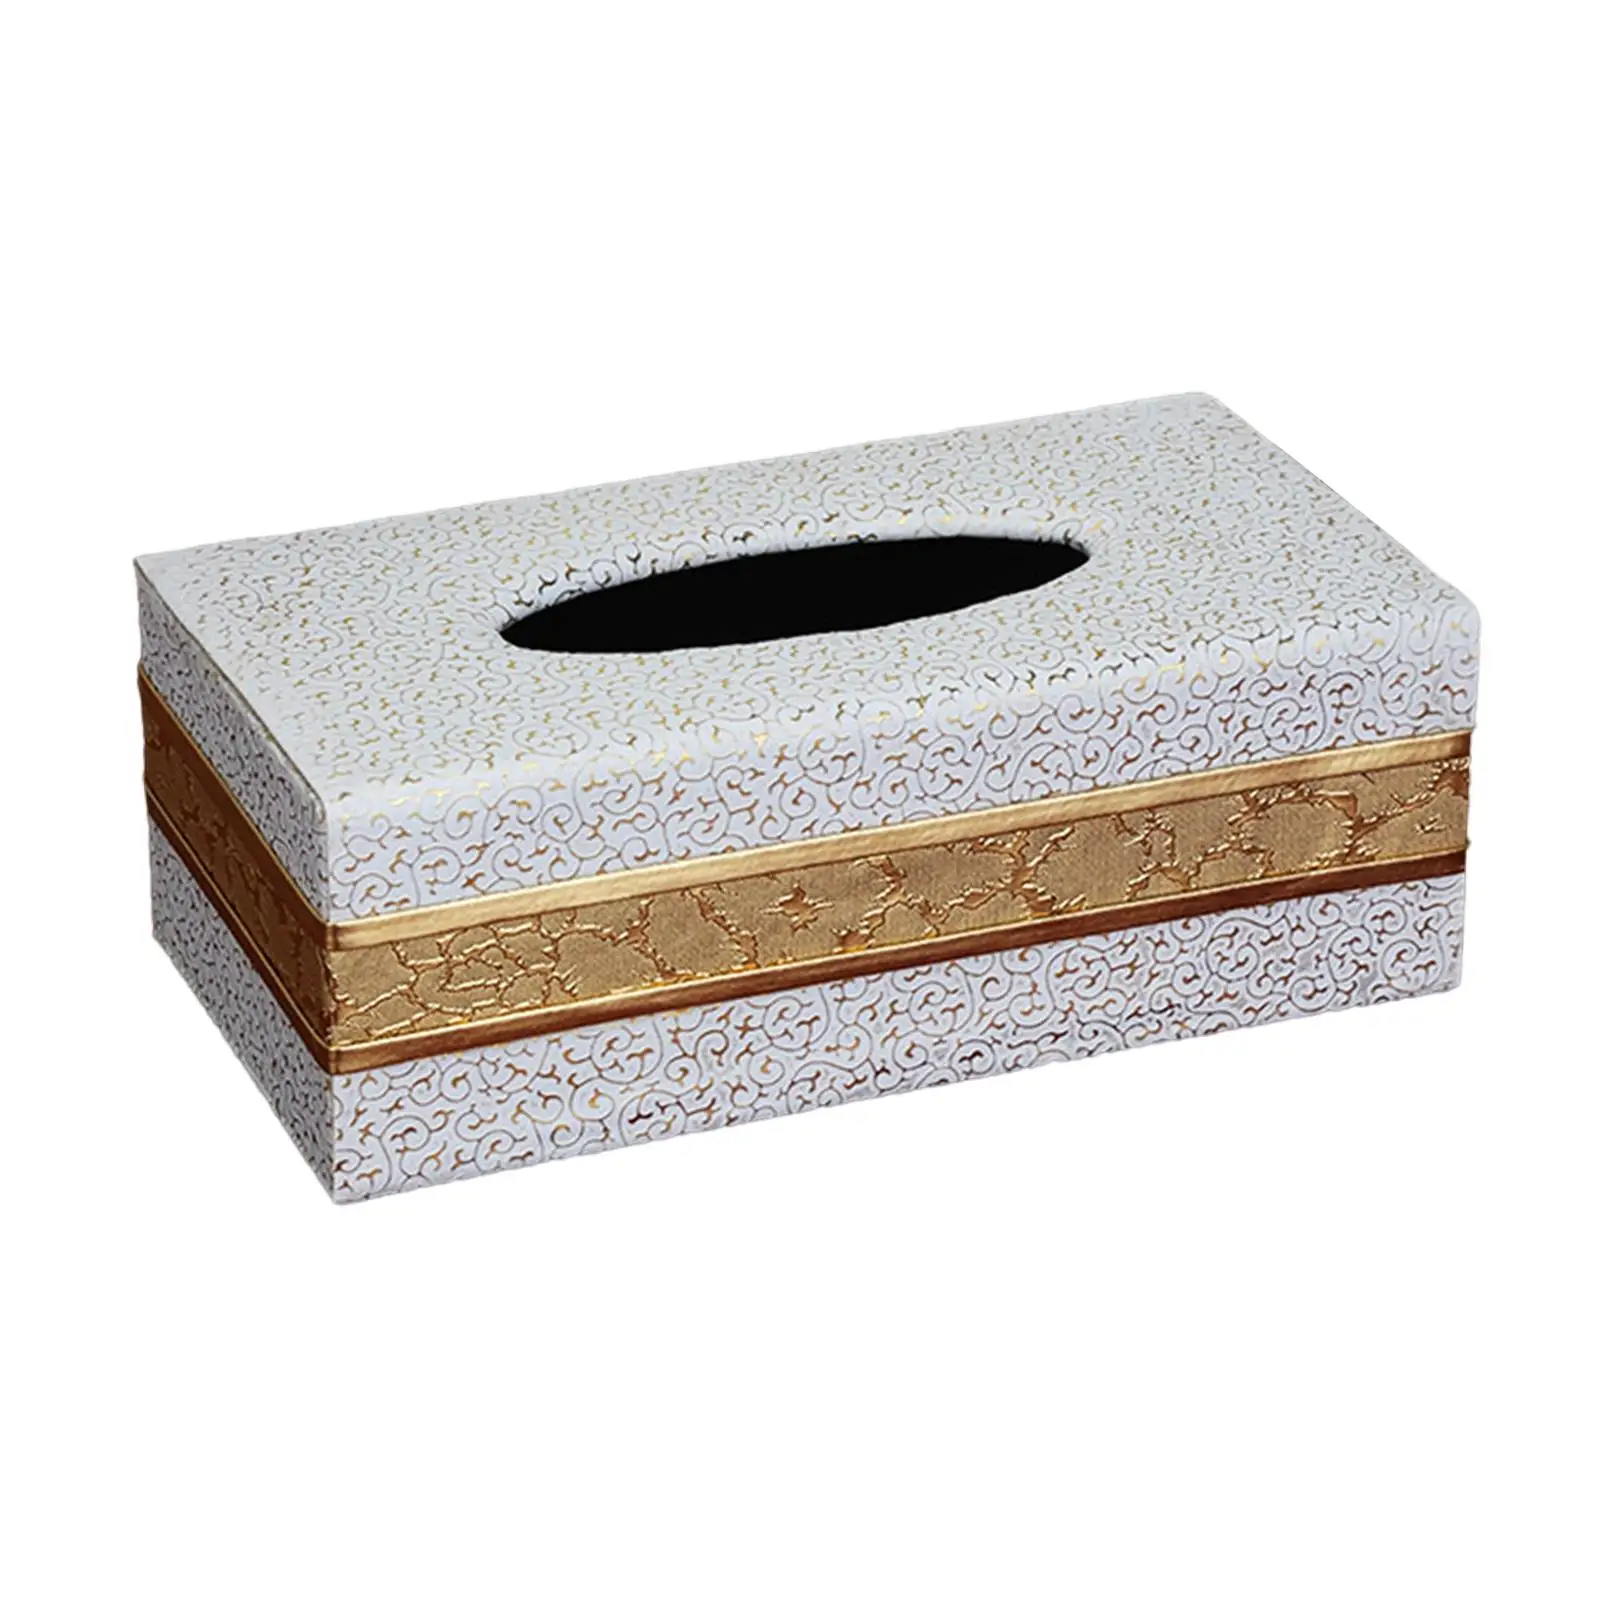 Rectangular Tissue Box Cover Napkin Dispenser for Hotel Vanity Countertop